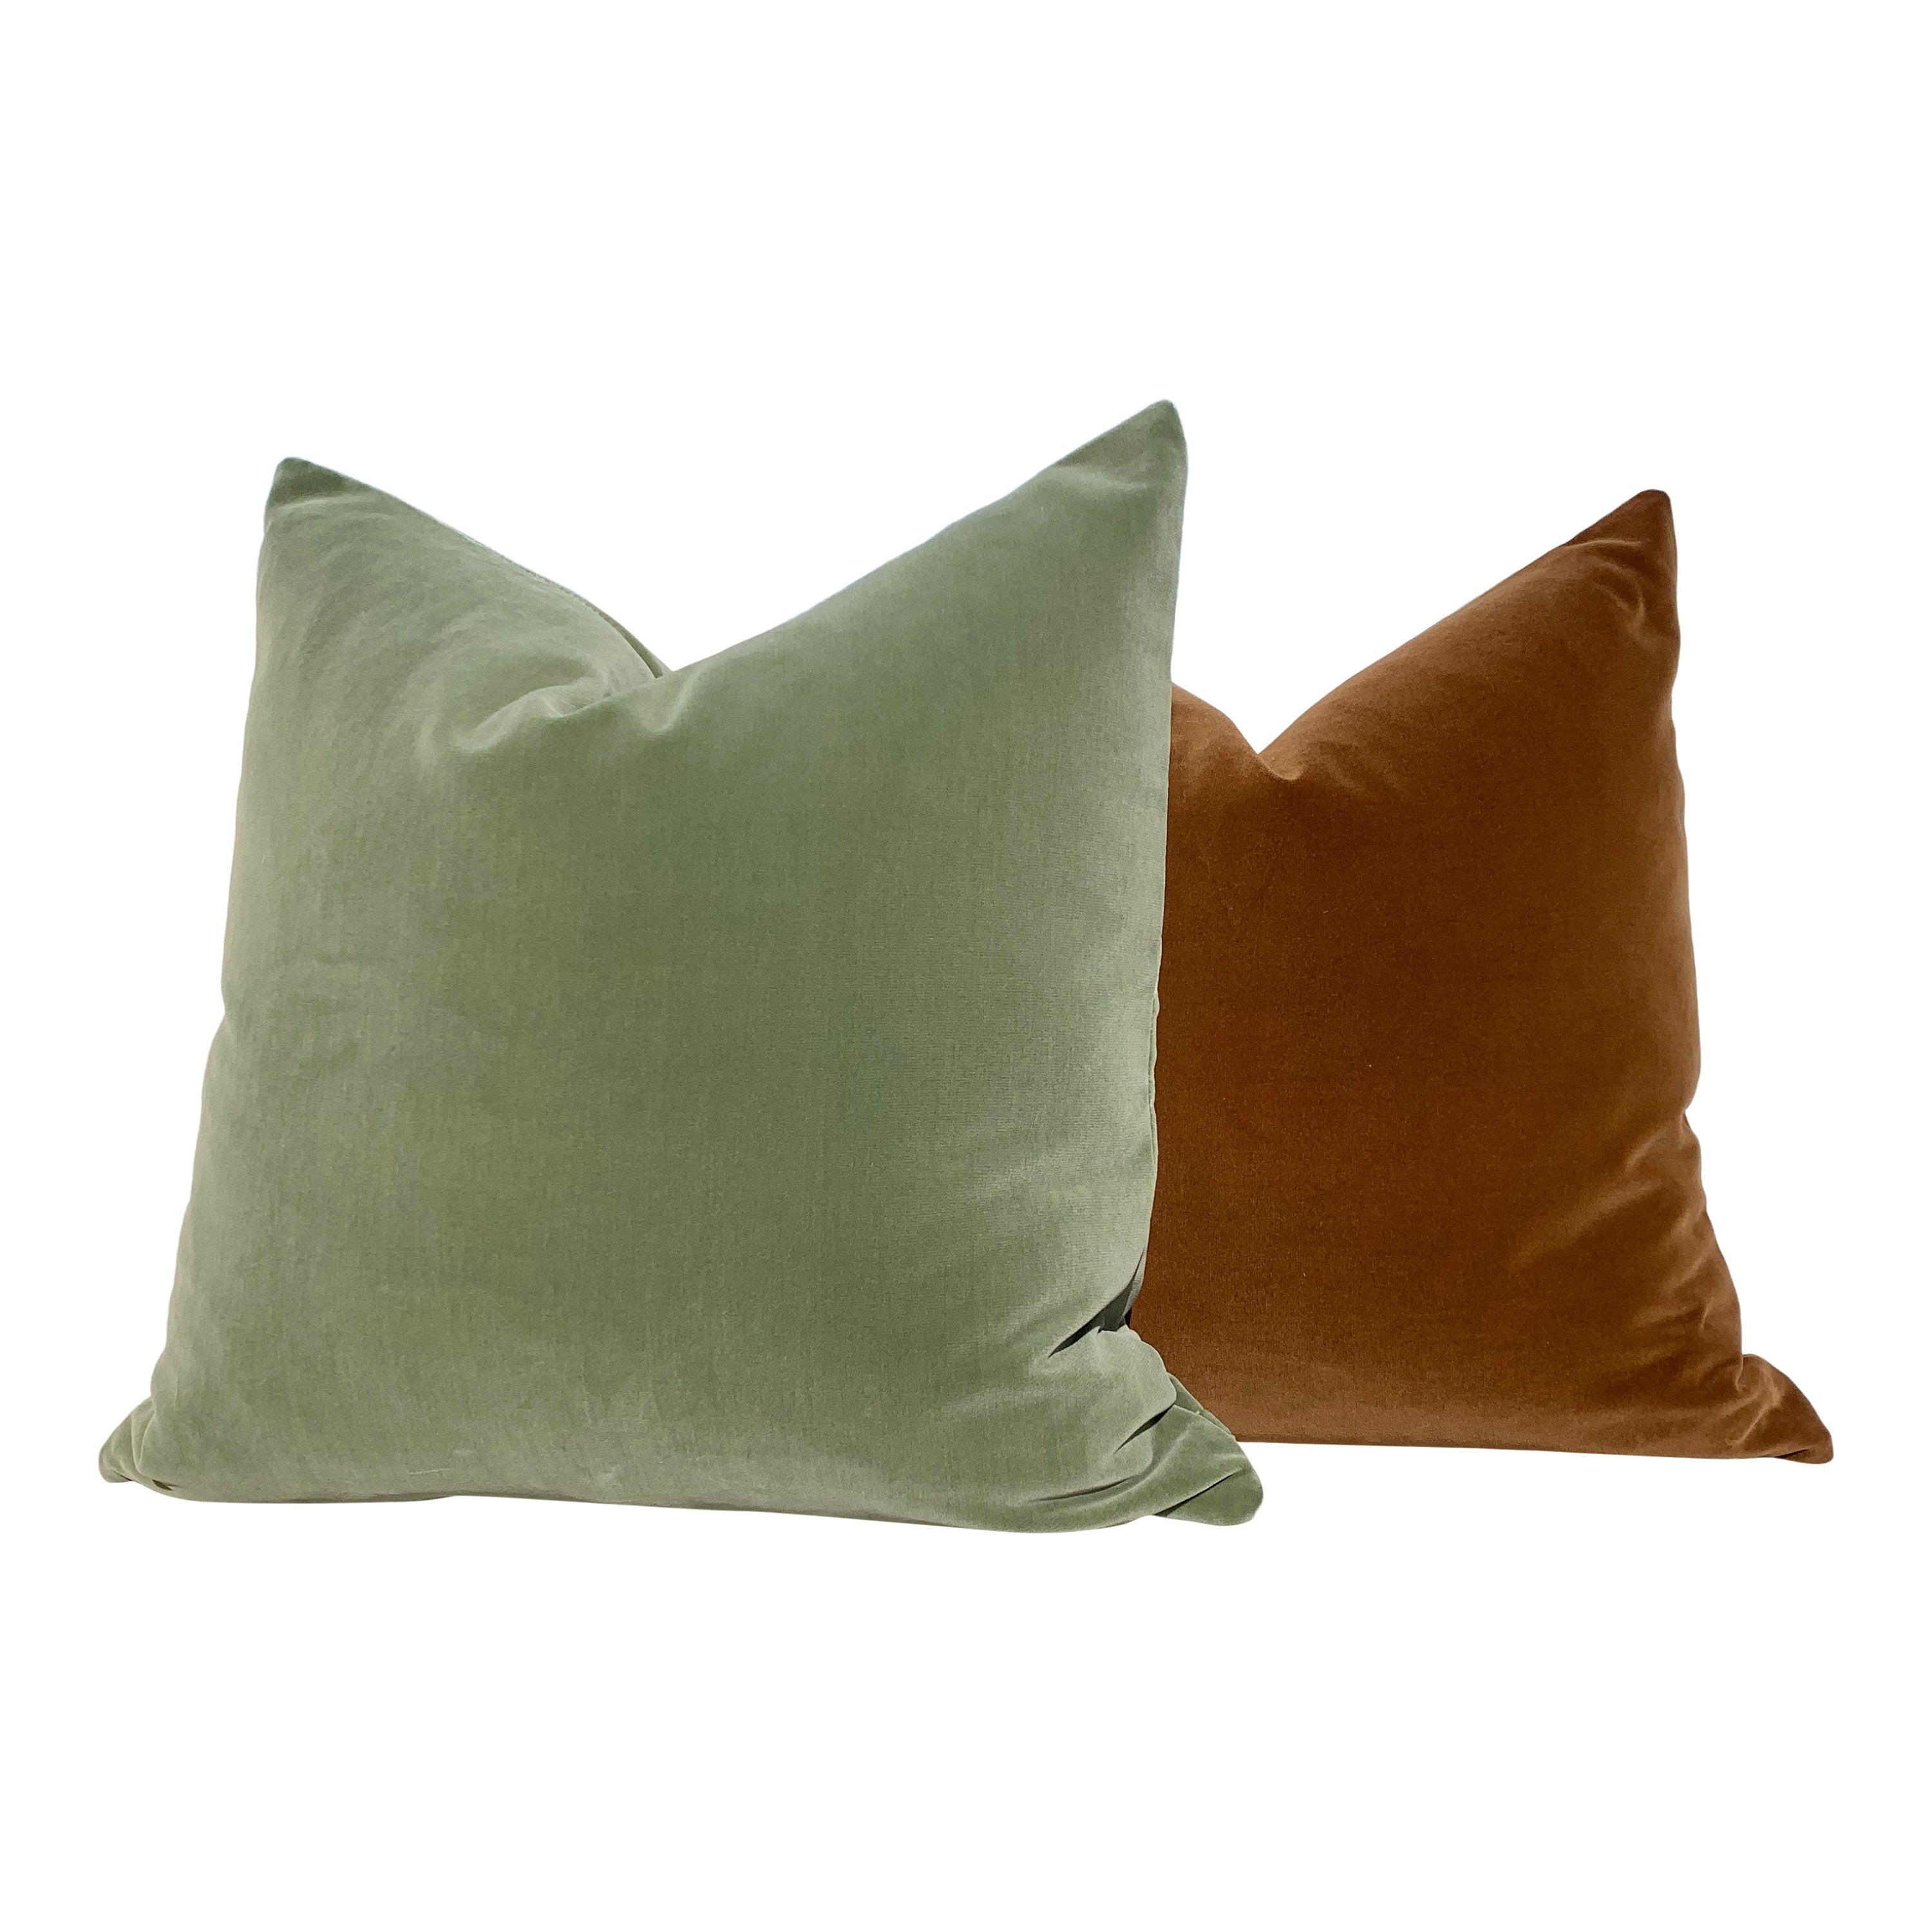 Velvet Pillow in Green. Decorative Velvet pillow, Lumbar Velvet Pillow, Solid Velvet pillow, Accent throw Cushion, Designer Pillow Cover.